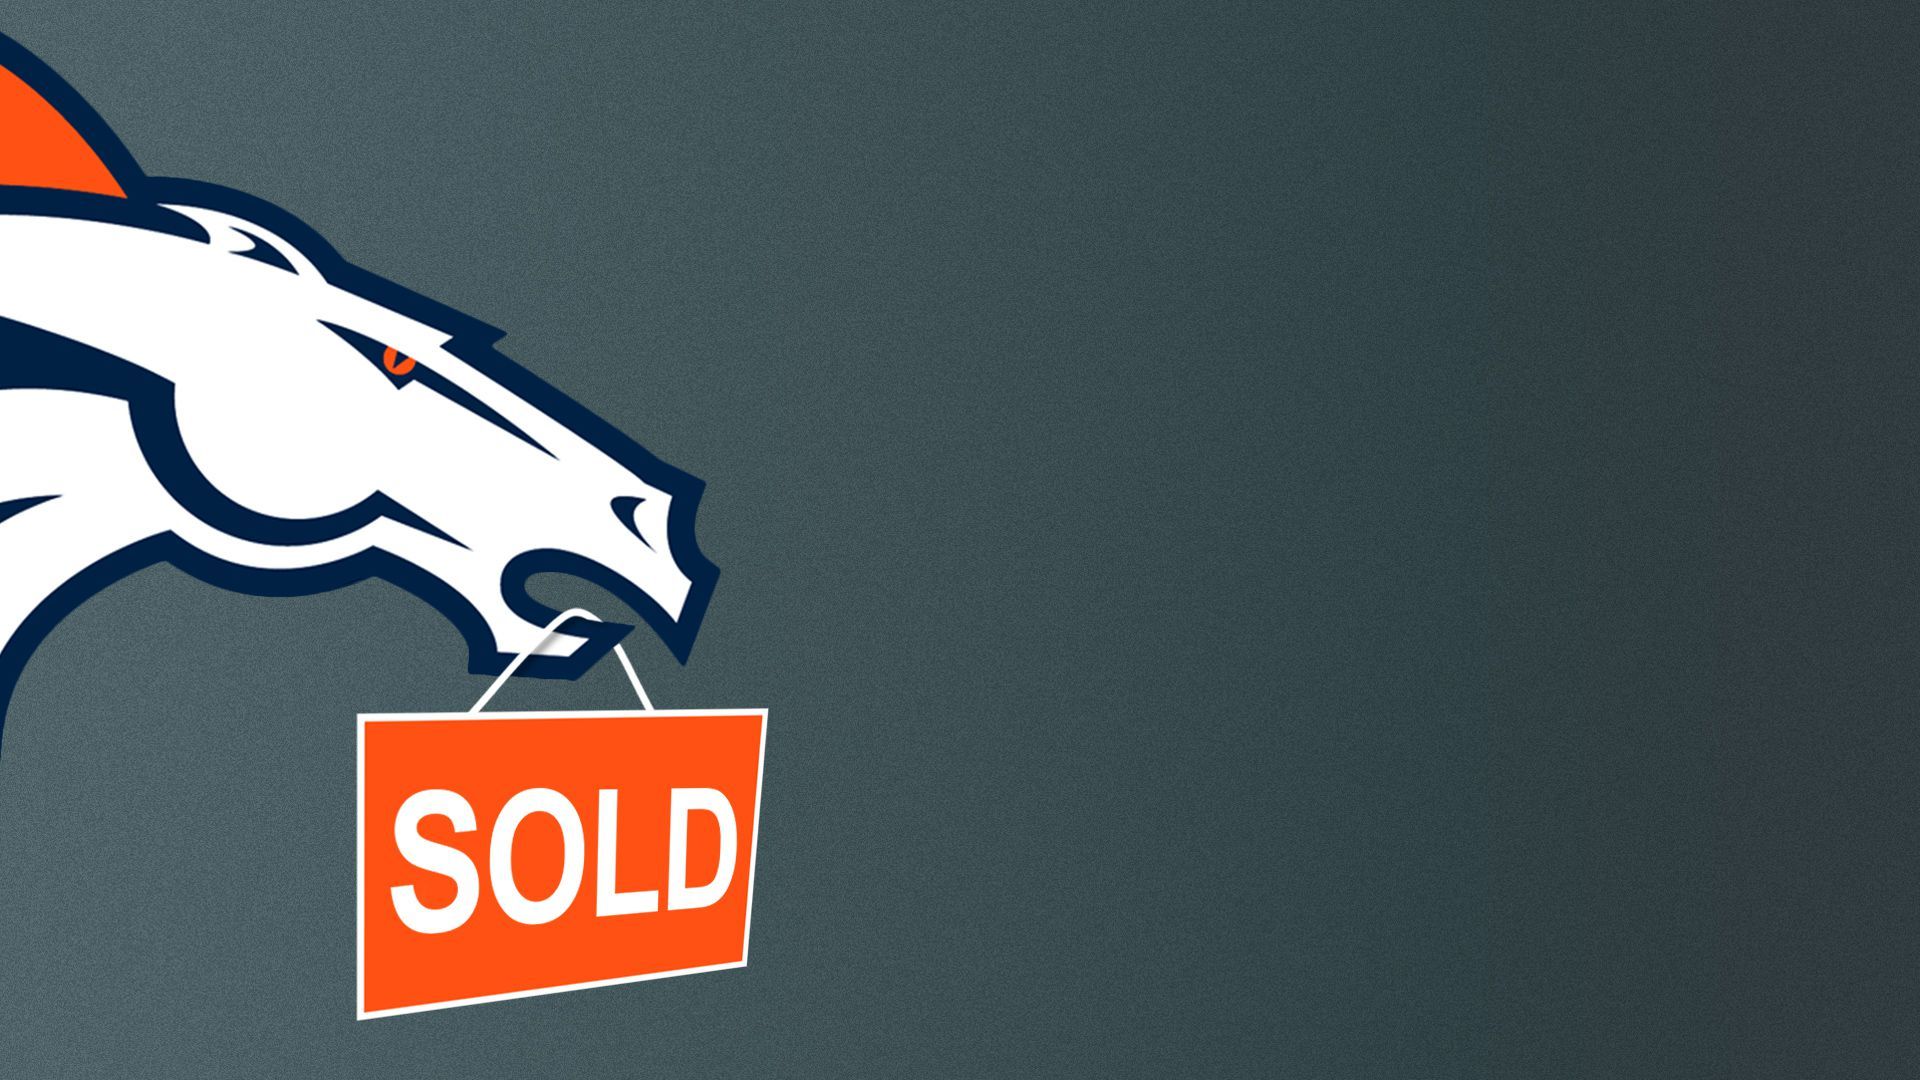 Illustration of the Denver Broncos logo holding a 